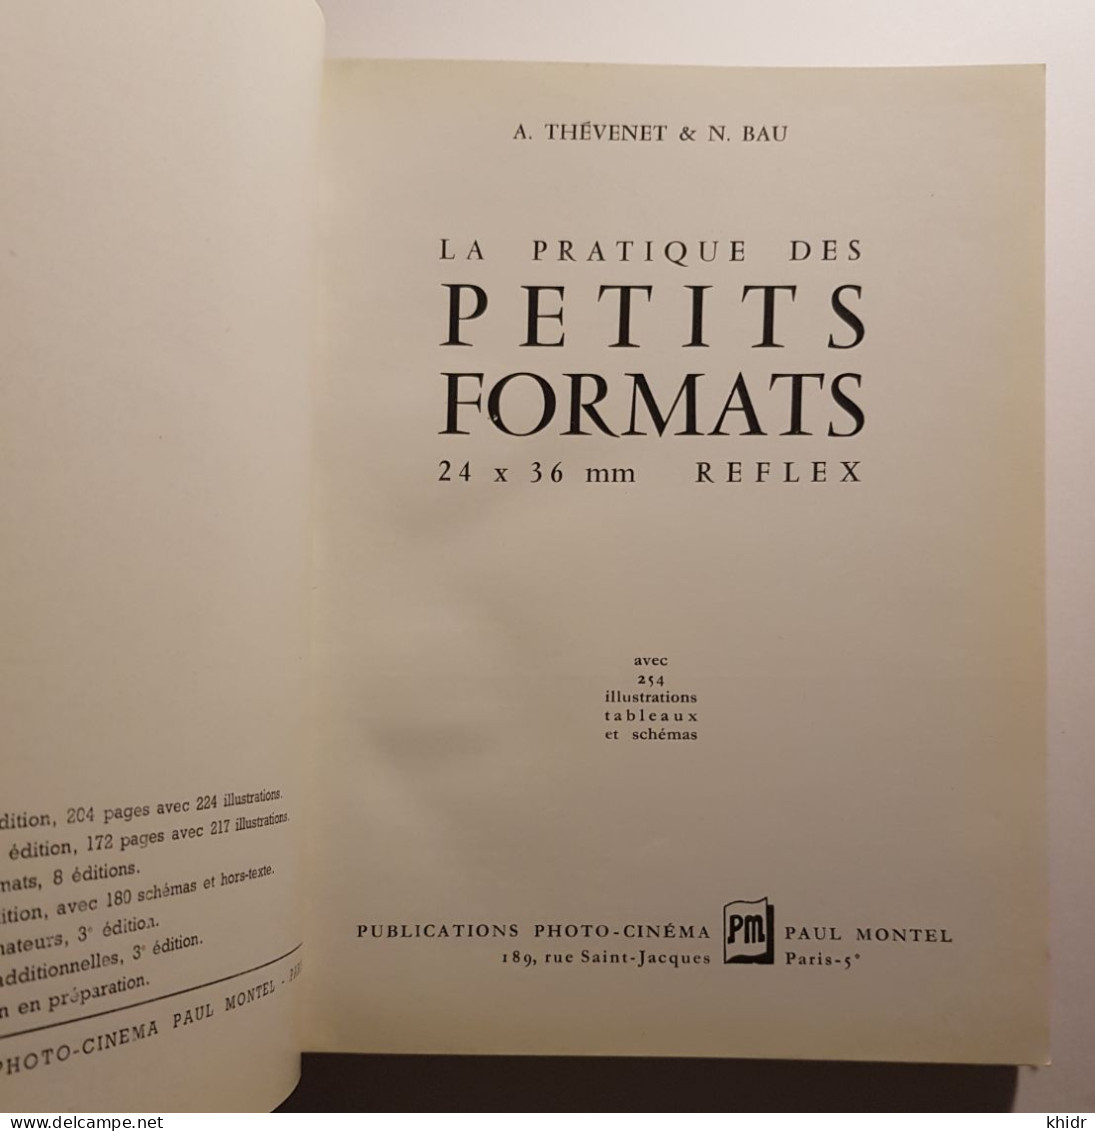 La Pratique Des Petits Formats, 24x36 Reflex,par A.Thevenet & N.BAU, 1962 - Photographs